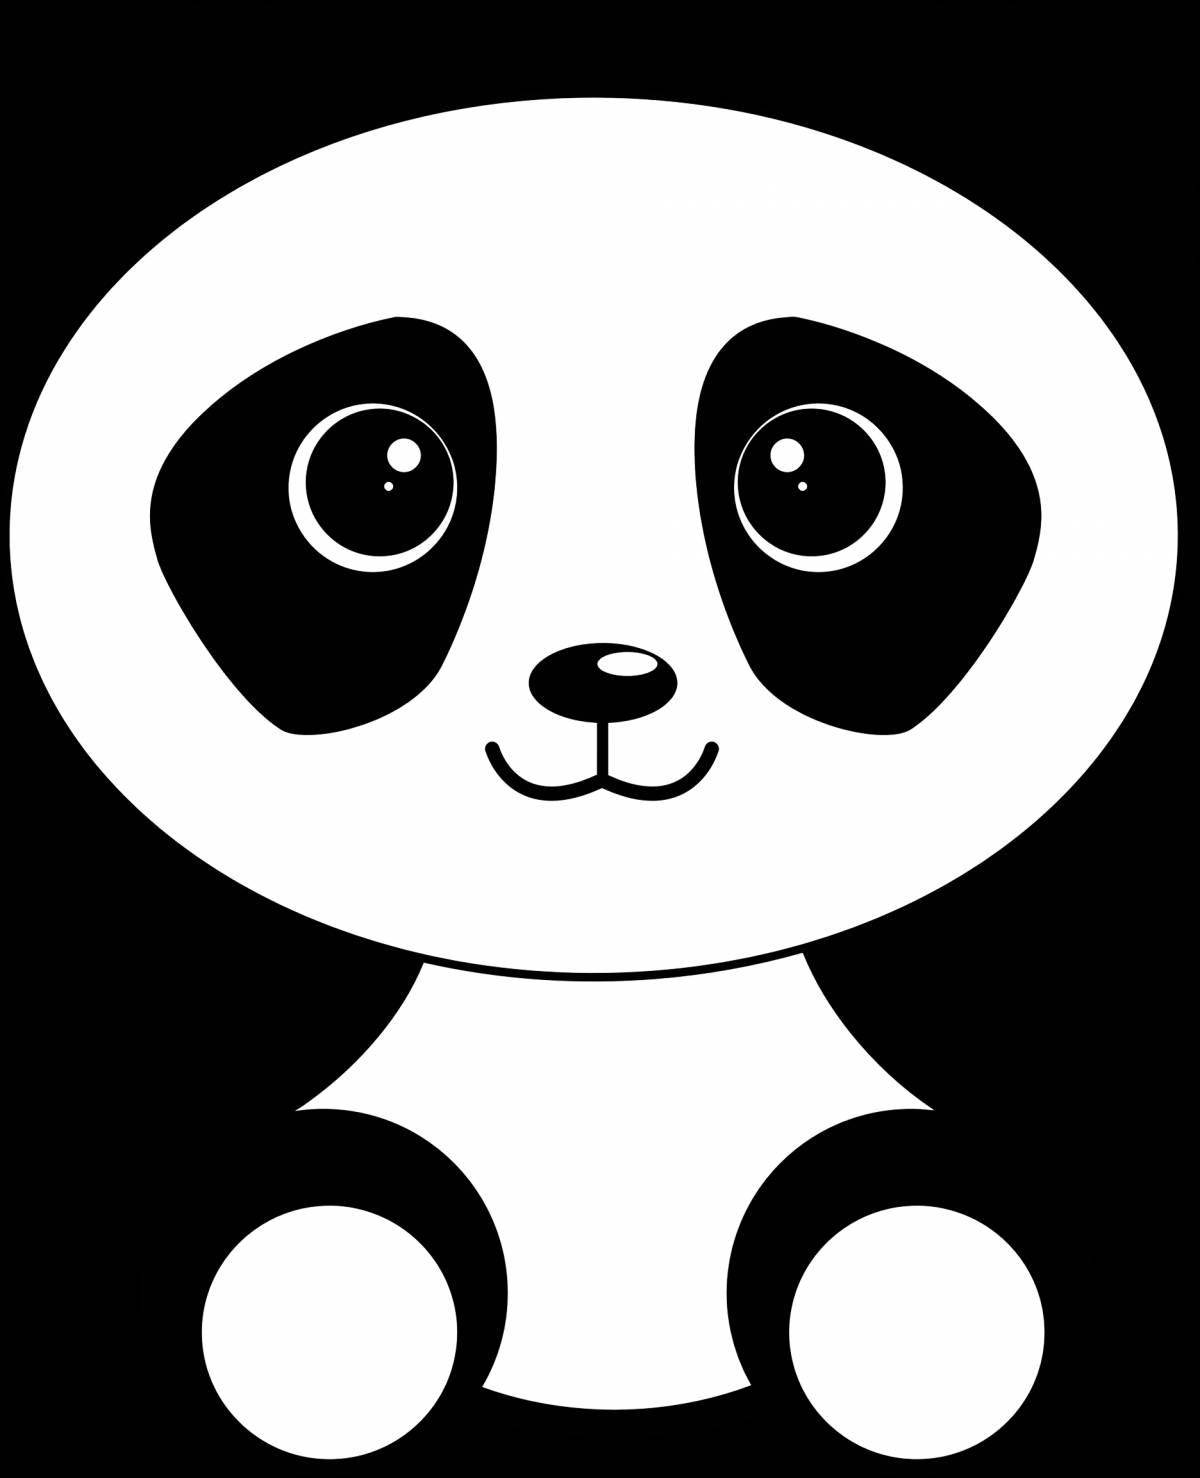 Увлекательная раскраска маленькой панды